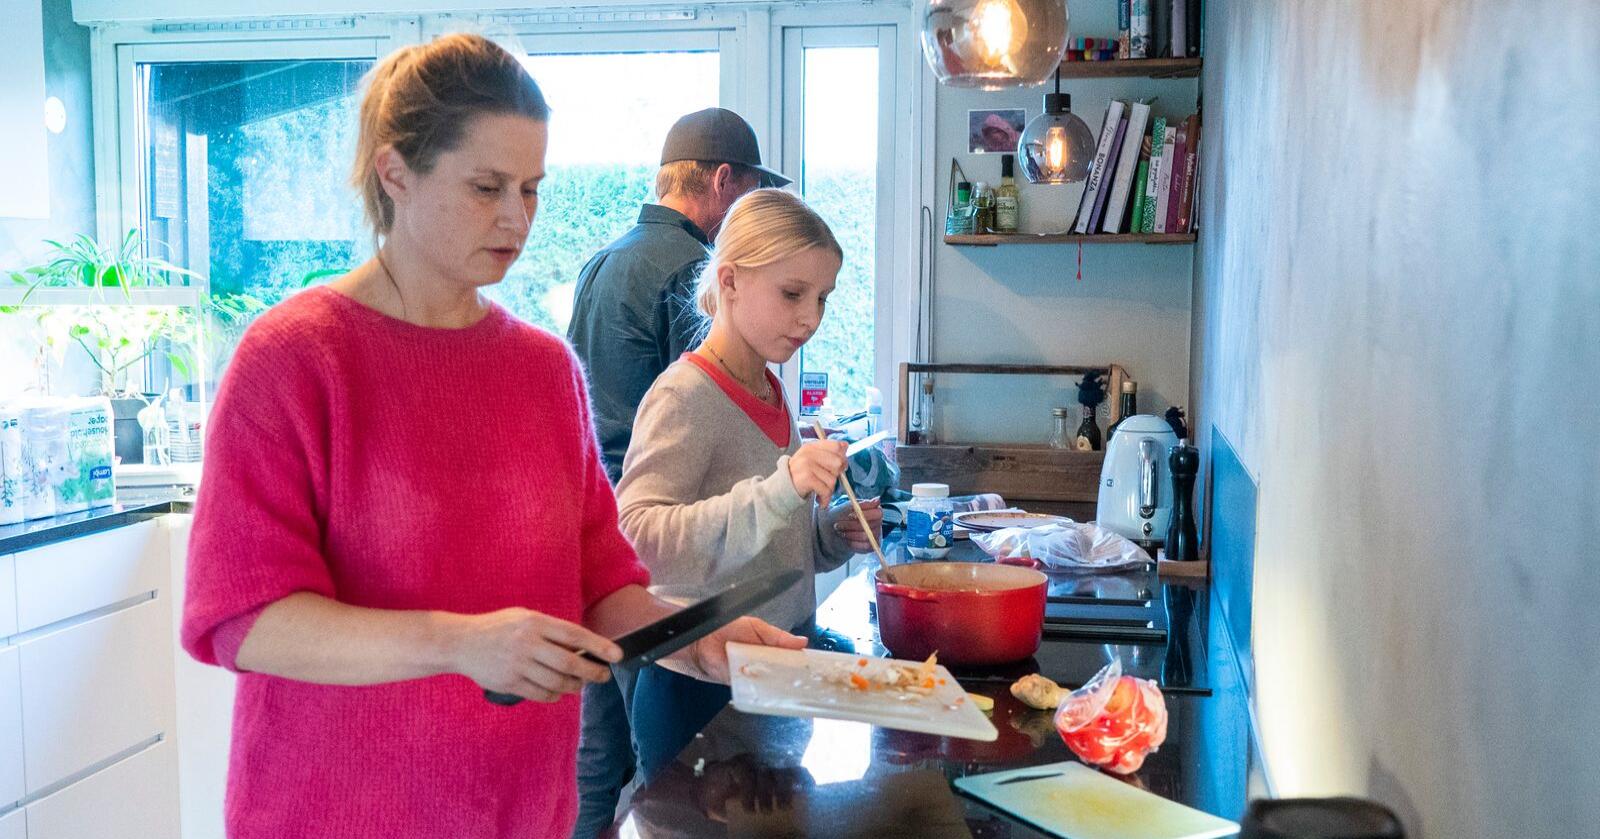 MIDDAGSTID: Det er ofte hektisk rundt middagstid hos familien Berg/Løkkeberg. Pernille Berg vil helst at maten skal være både sunn, billig og rask å lage. Foto: Terje Pedersen / NTB 